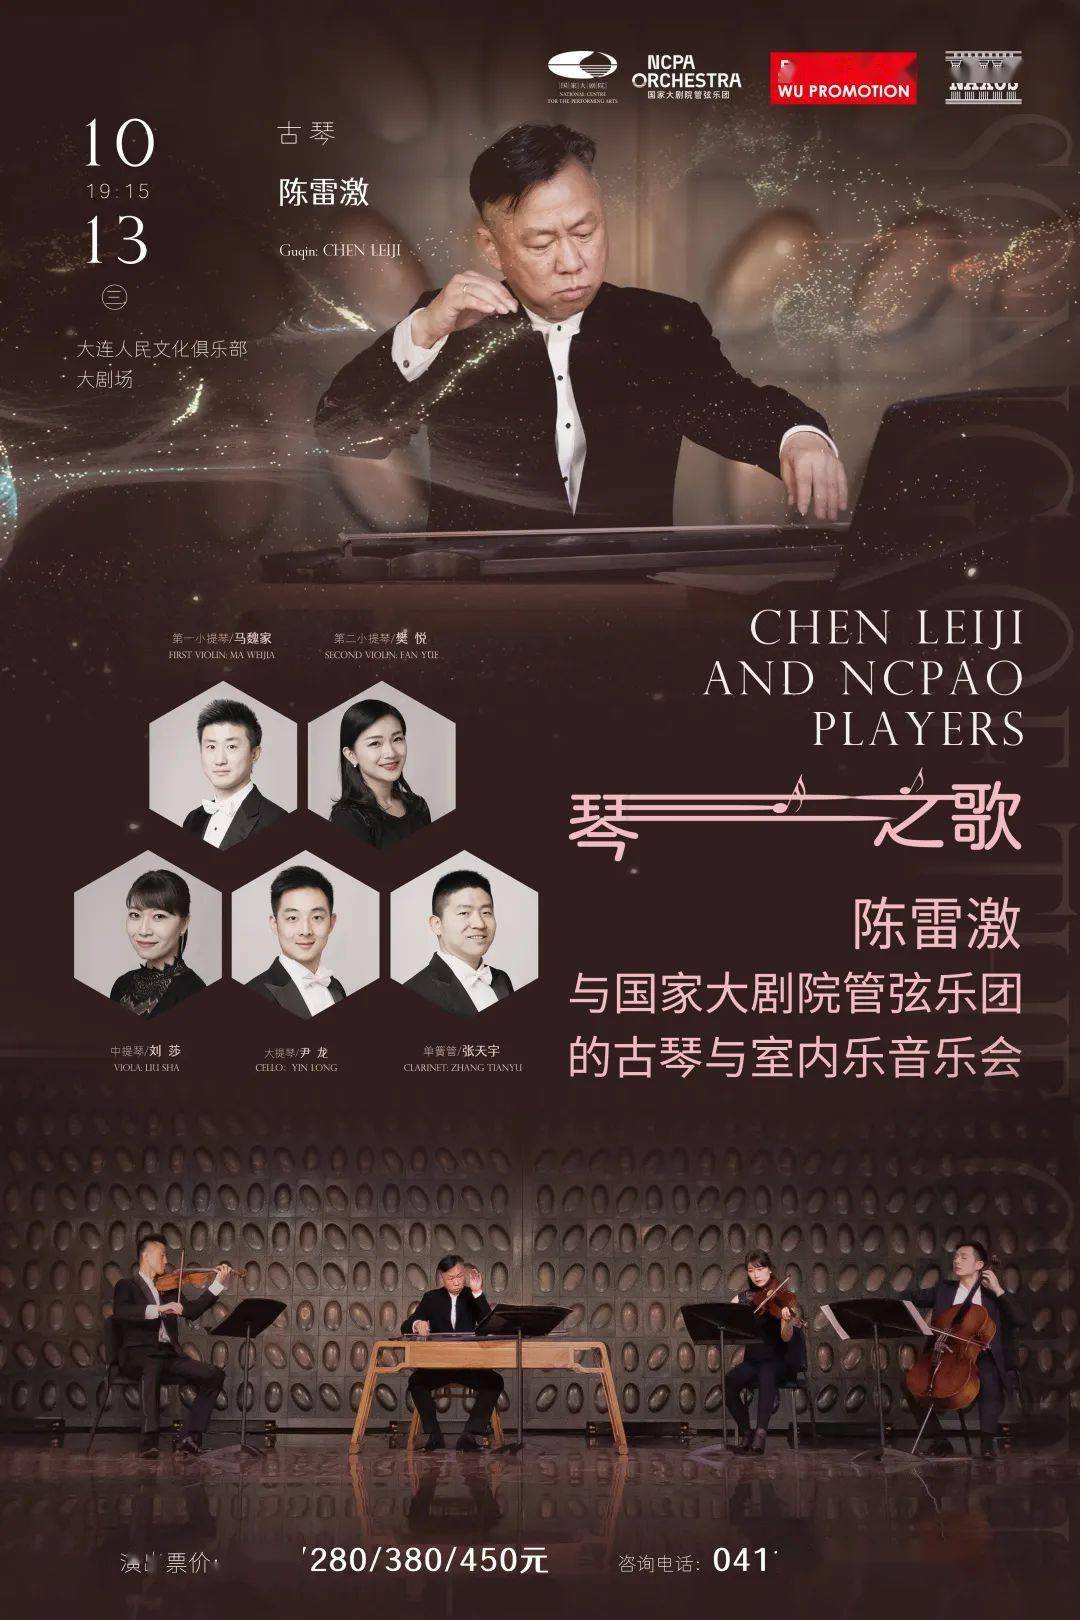 马魏家:首先,作为国家大剧院管弦乐团的演奏家,我们有推广中国当代